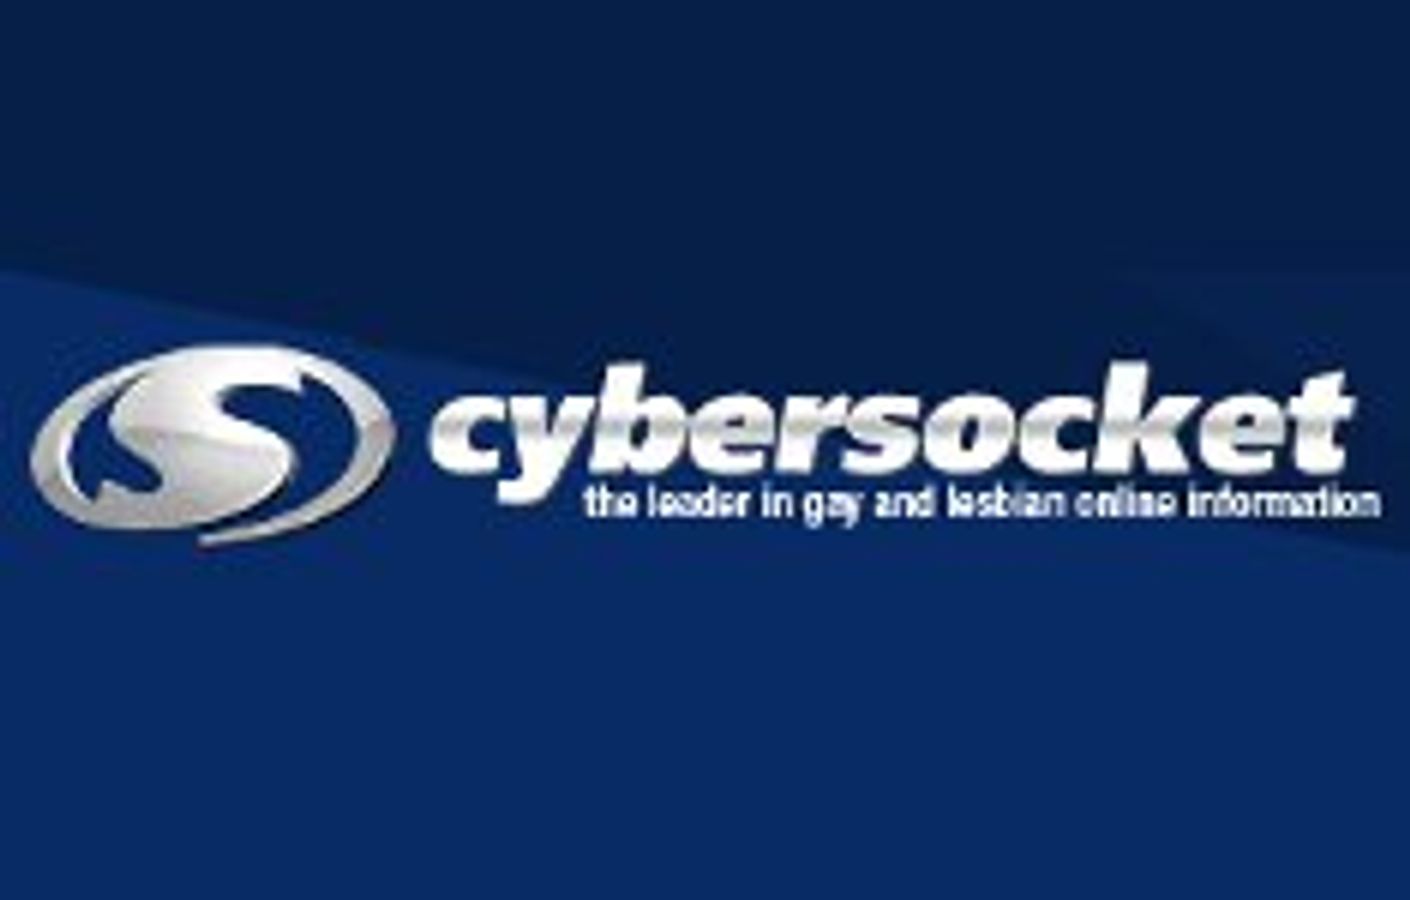 Cybersocket